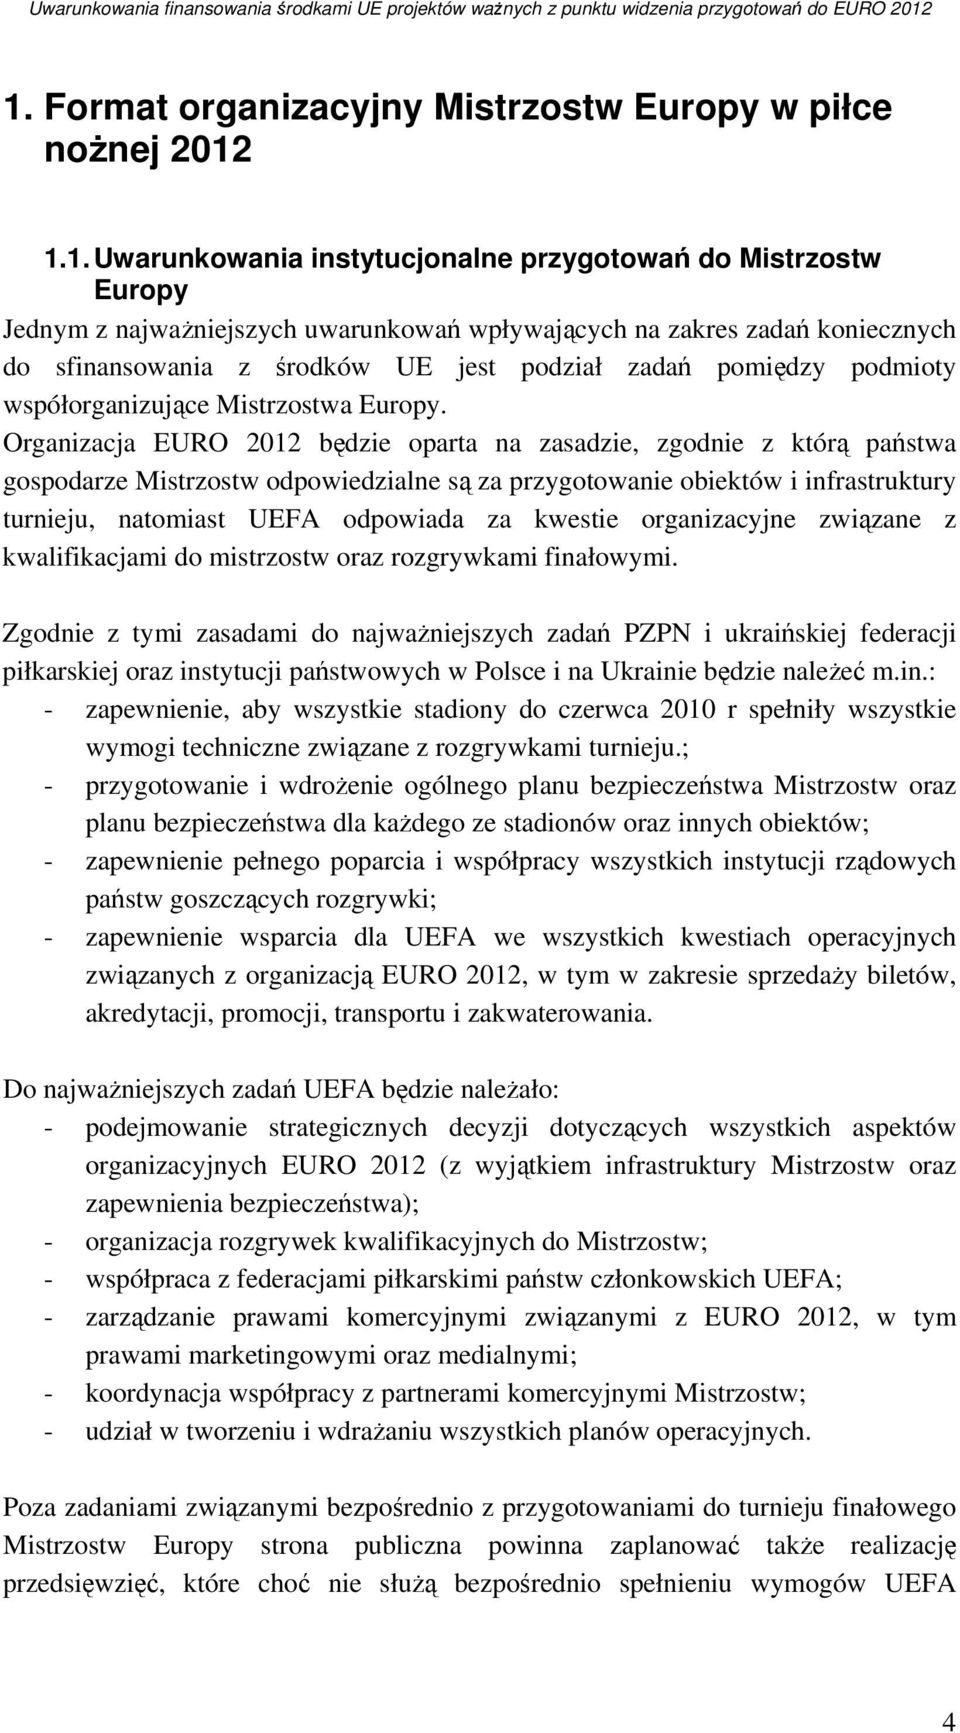 Organizacja EURO 2012 będzie oparta na zasadzie, zgodnie z którą państwa gospodarze Mistrzostw odpowiedzialne są za przygotowanie obiektów i infrastruktury turnieju, natomiast UEFA odpowiada za